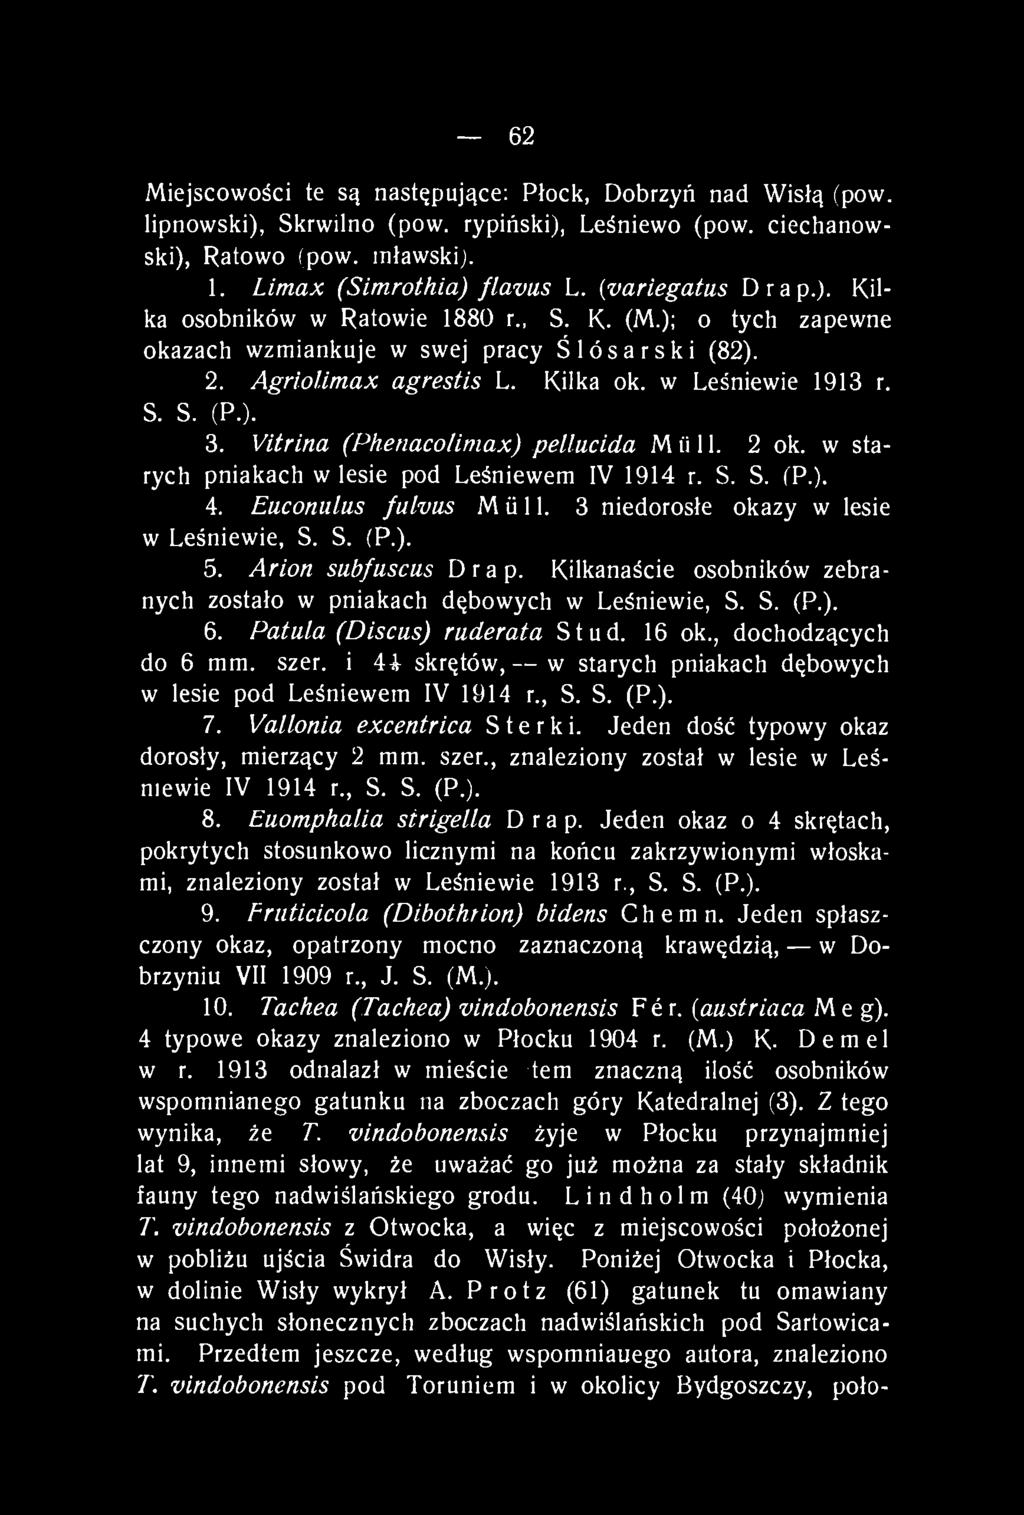 Vitrina (Phenacolimax) pellucida M ii 11. 2 ok. w starych pniakach w lesie pod Leśniewem IV 1914 r. S. S. (P.). 4. Euconiilus fulvus Müll. 3 niedorosłe okazy w lesie w Leśniewie, S. S. (P.). 5.